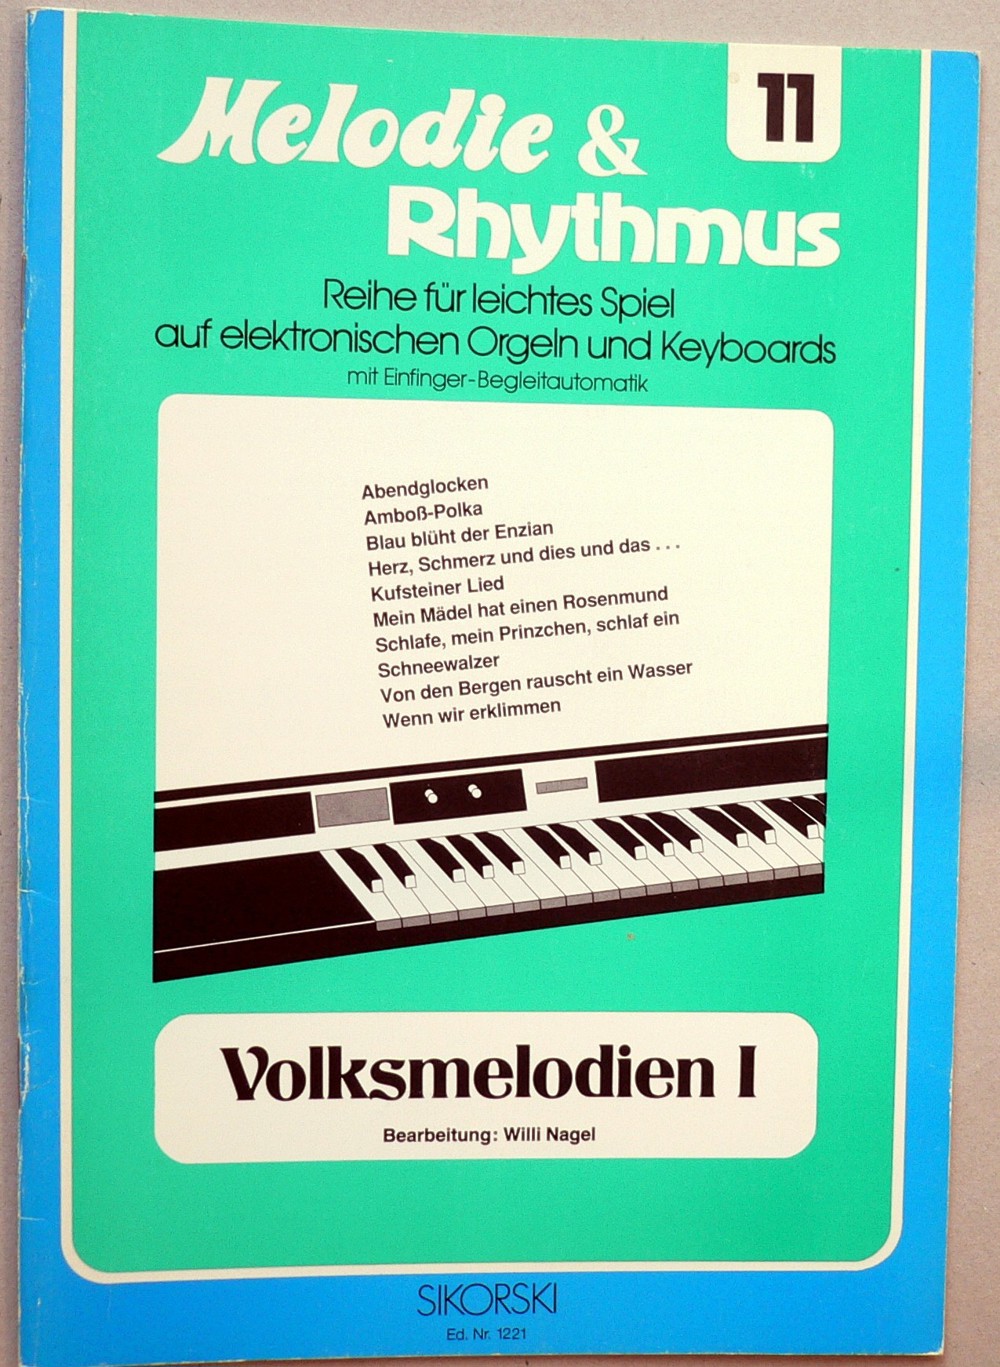 Noten: Melodie & Rhythmus Volksmelodien I + II